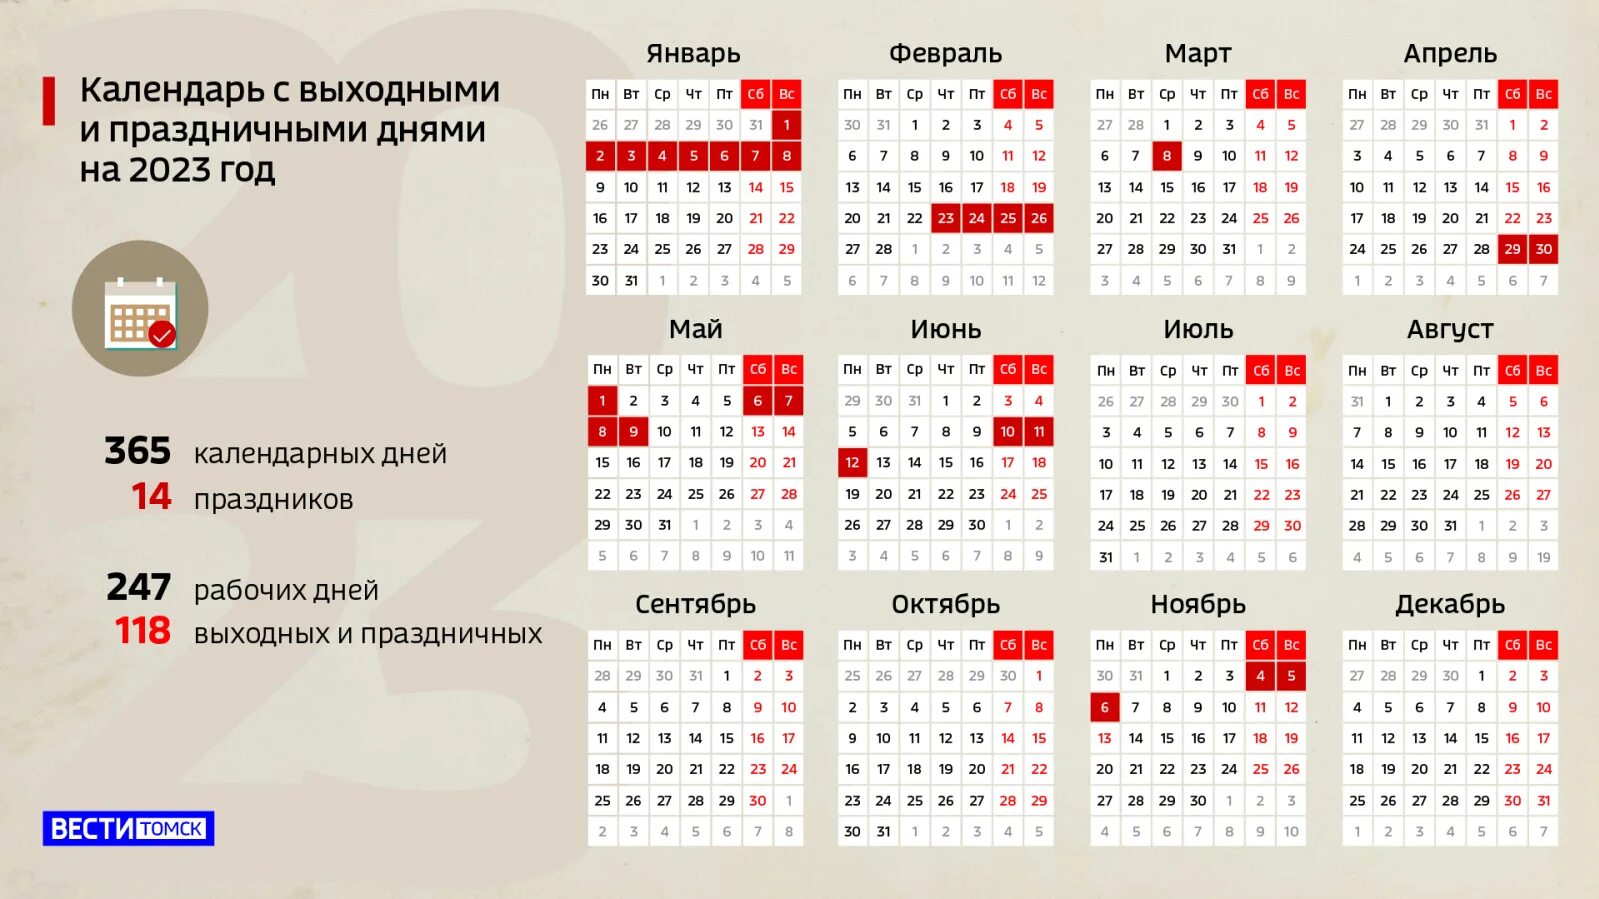 Календарь на 2022 год с праздниками и выходными выходные снизу. Праздники нерабочие дни 2022 года в России. Выходные дни и праздничные дни в 2022 году России. Праздничные дни в 2022 году в России календарь. Выходные в марте в честь выборов